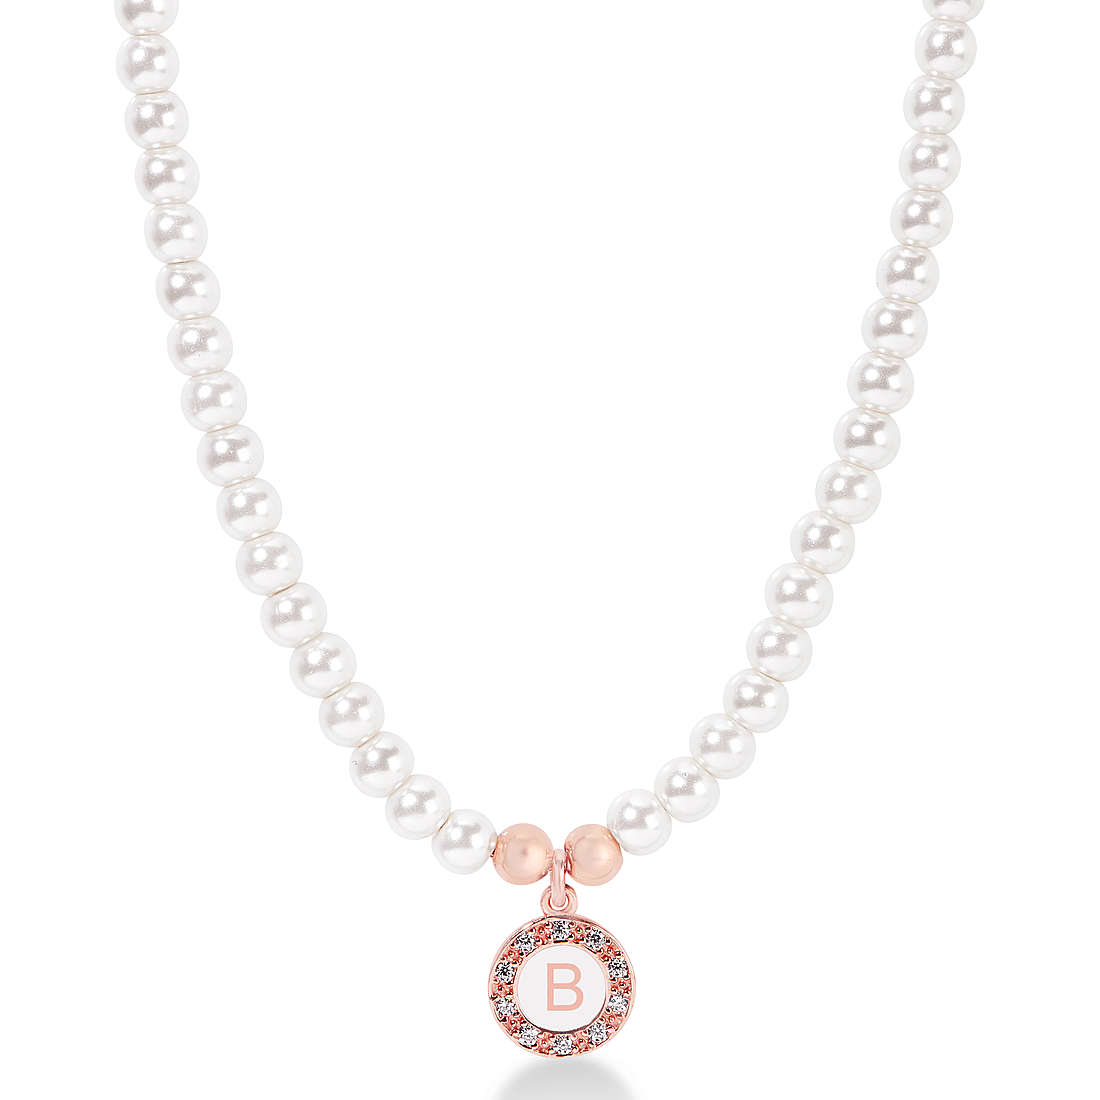 Halskette mit Perlen Dvccio Grace für frau CPERLAGR-b